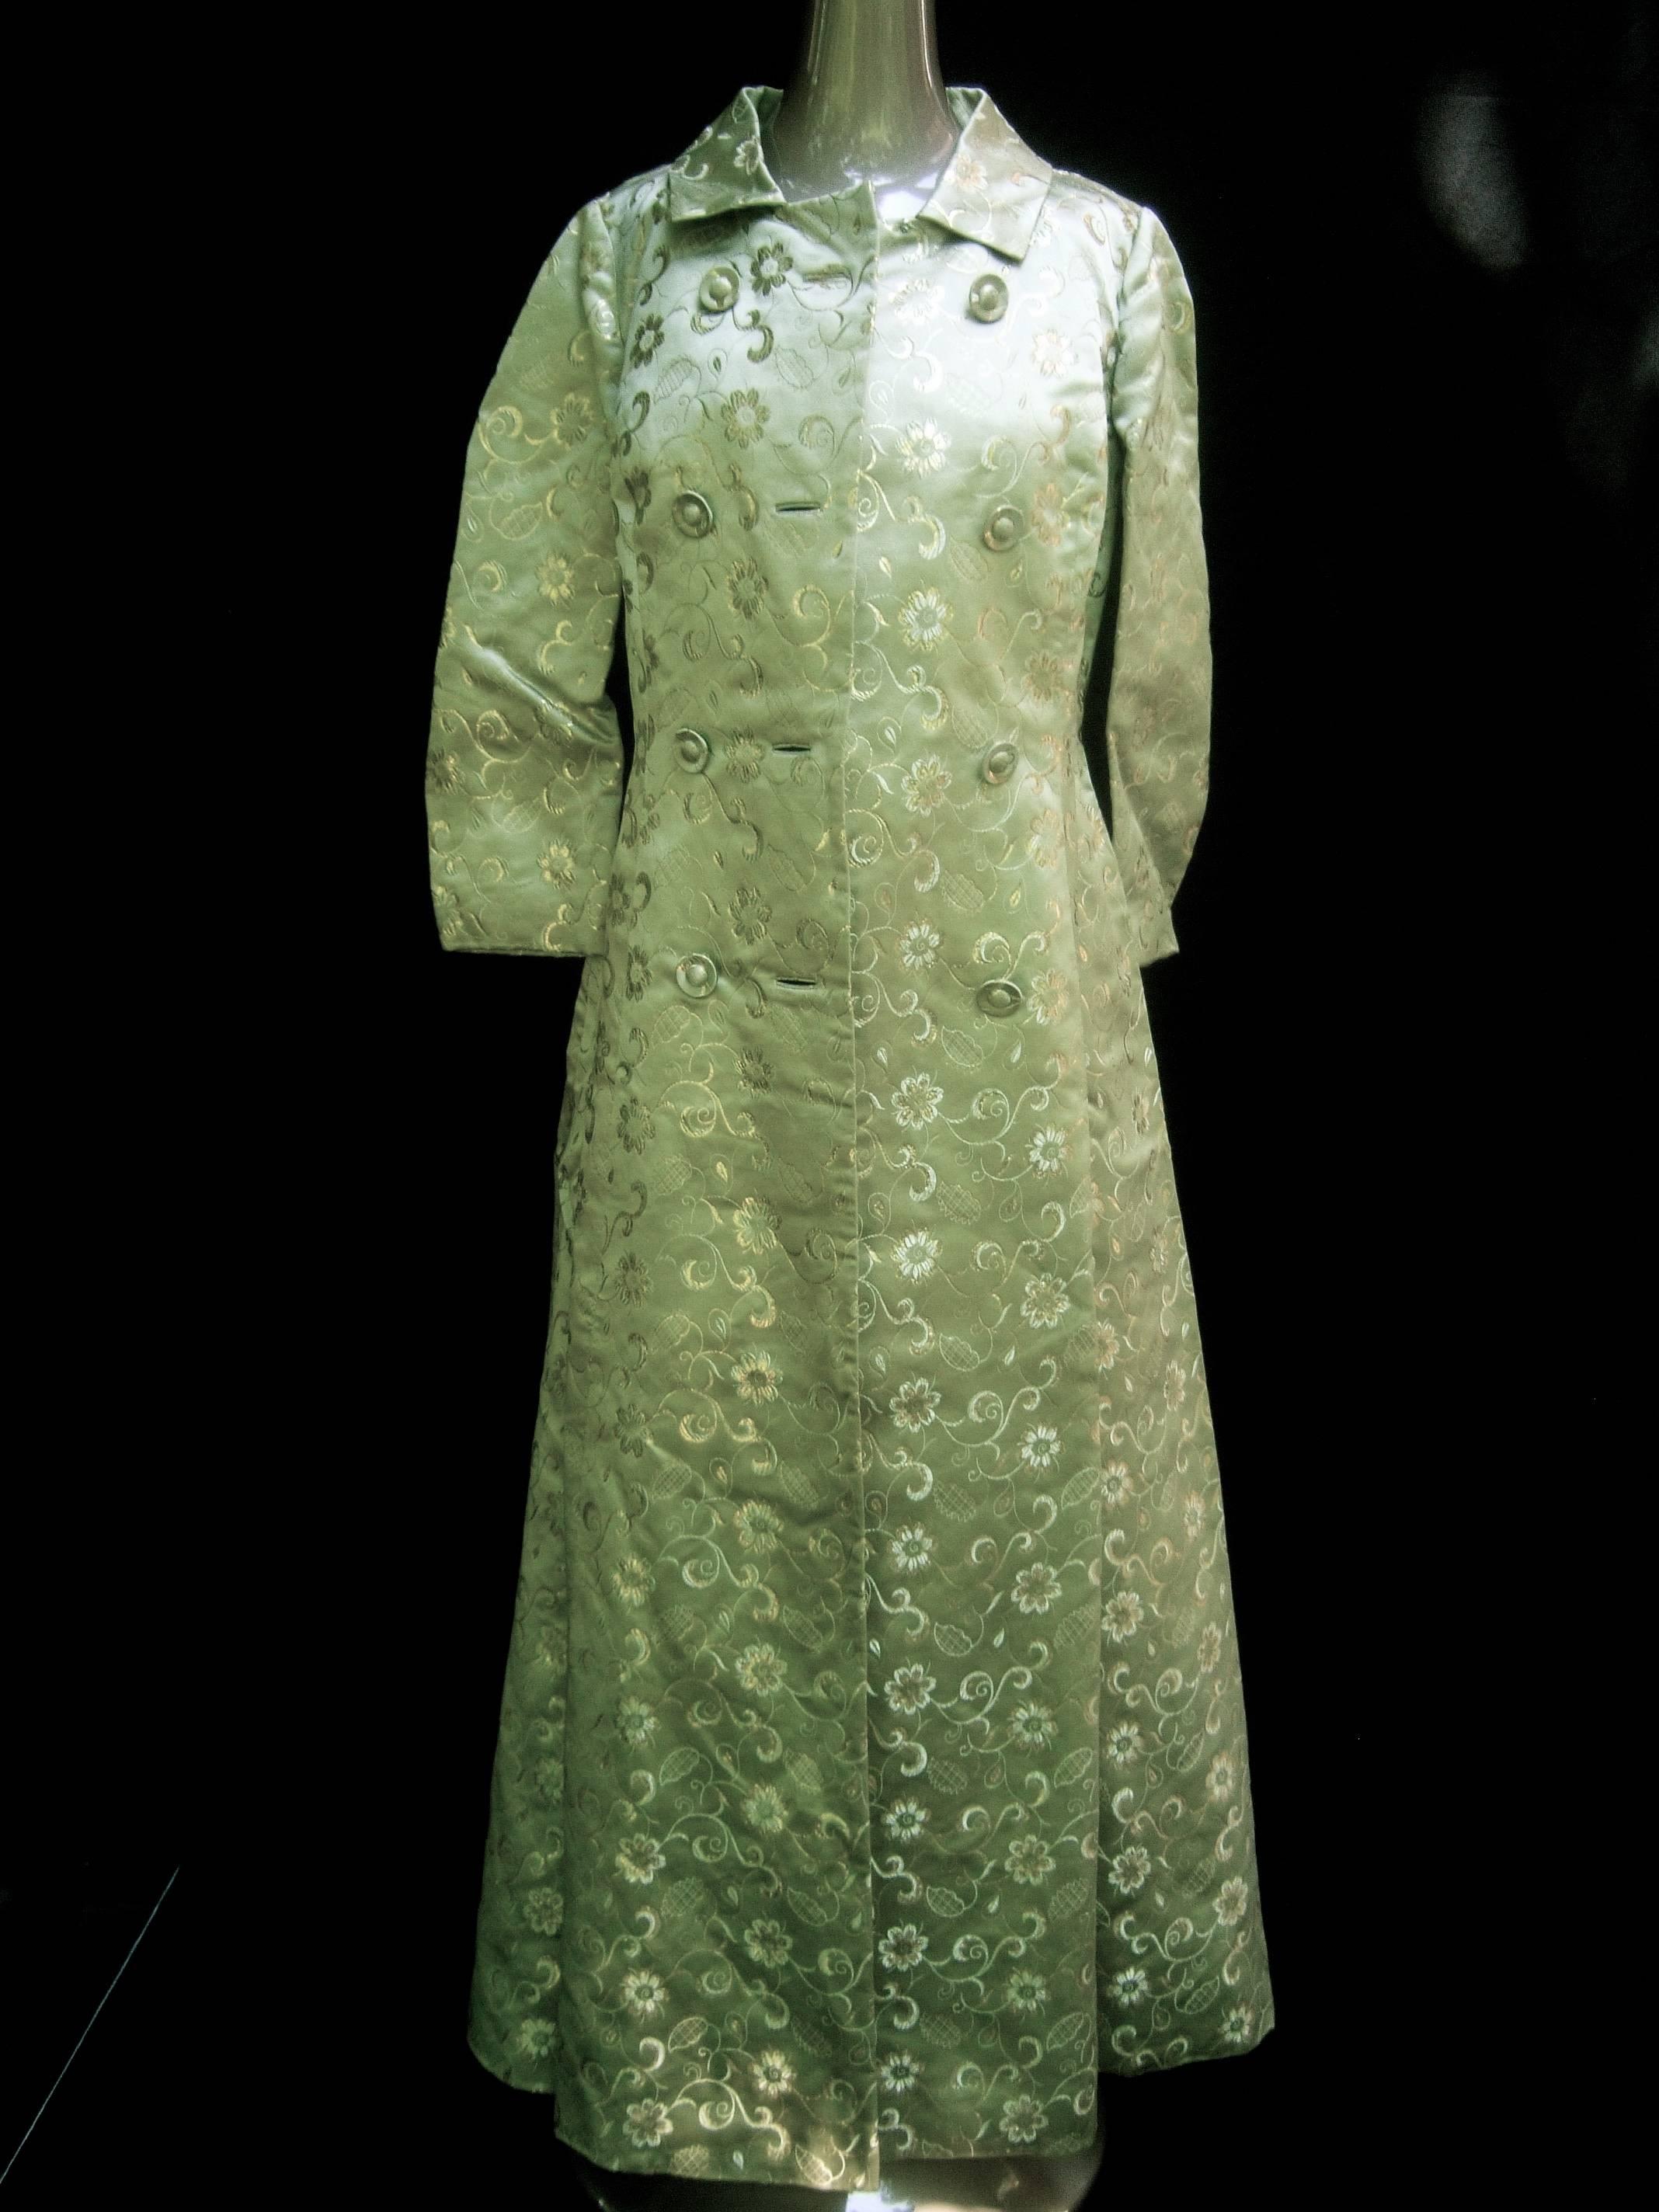 Opulent ensemble de manteau d'opéra en brocart de satin vert menthe vers les années 1960
Le manteau du soir en brocart vert pâle est conçu de manière à ce qu'il puisse être porté en toute sécurité.
avec un luxueux tissu de brocart satiné avec des